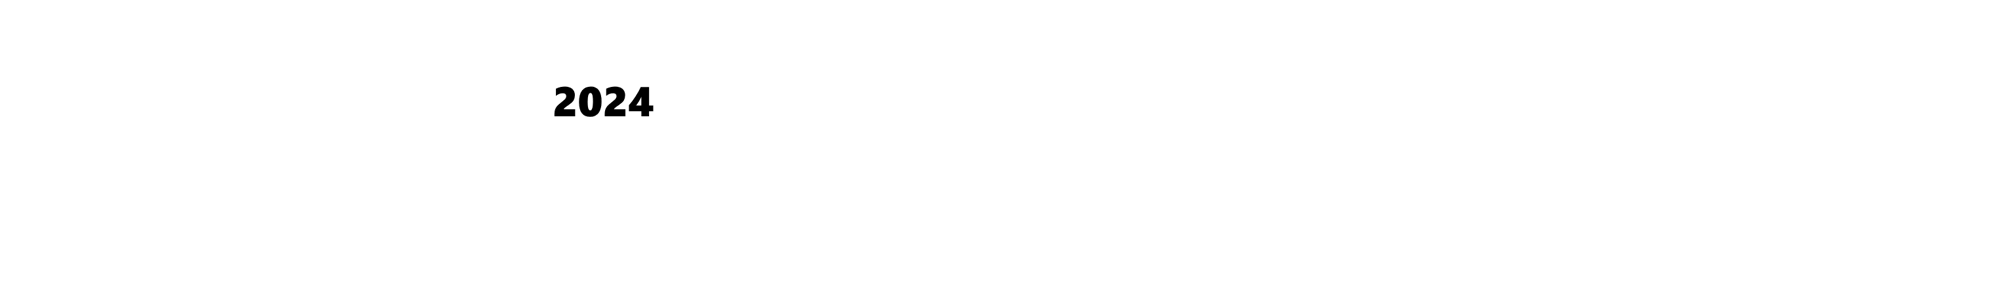 2024 CobbleStone User Conference